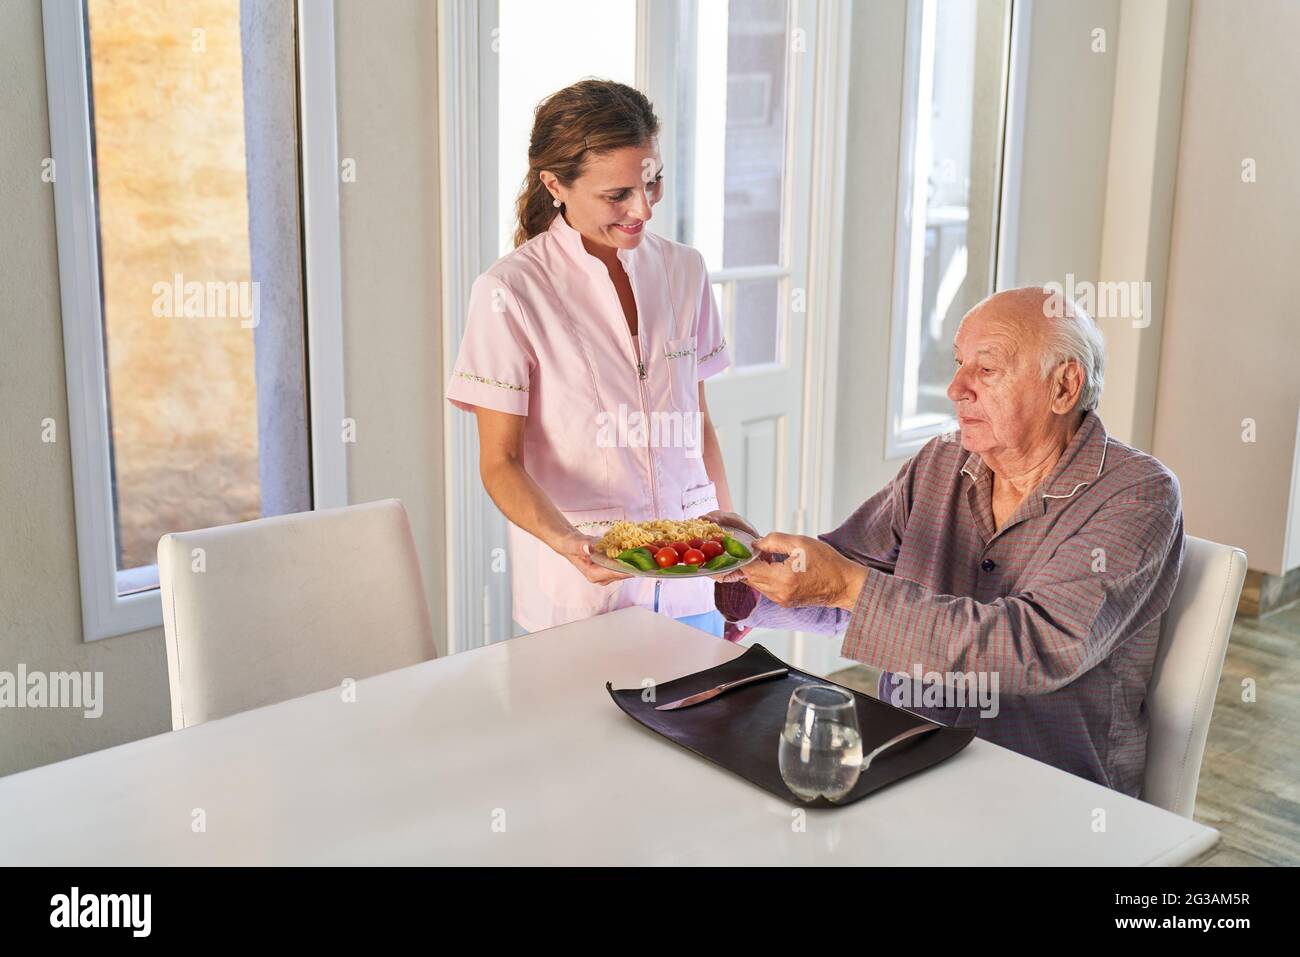 La moglie del servizio infermieristico o assistente di cura serve il pranzo per l'uomo anziano nel suo appartamento Foto Stock